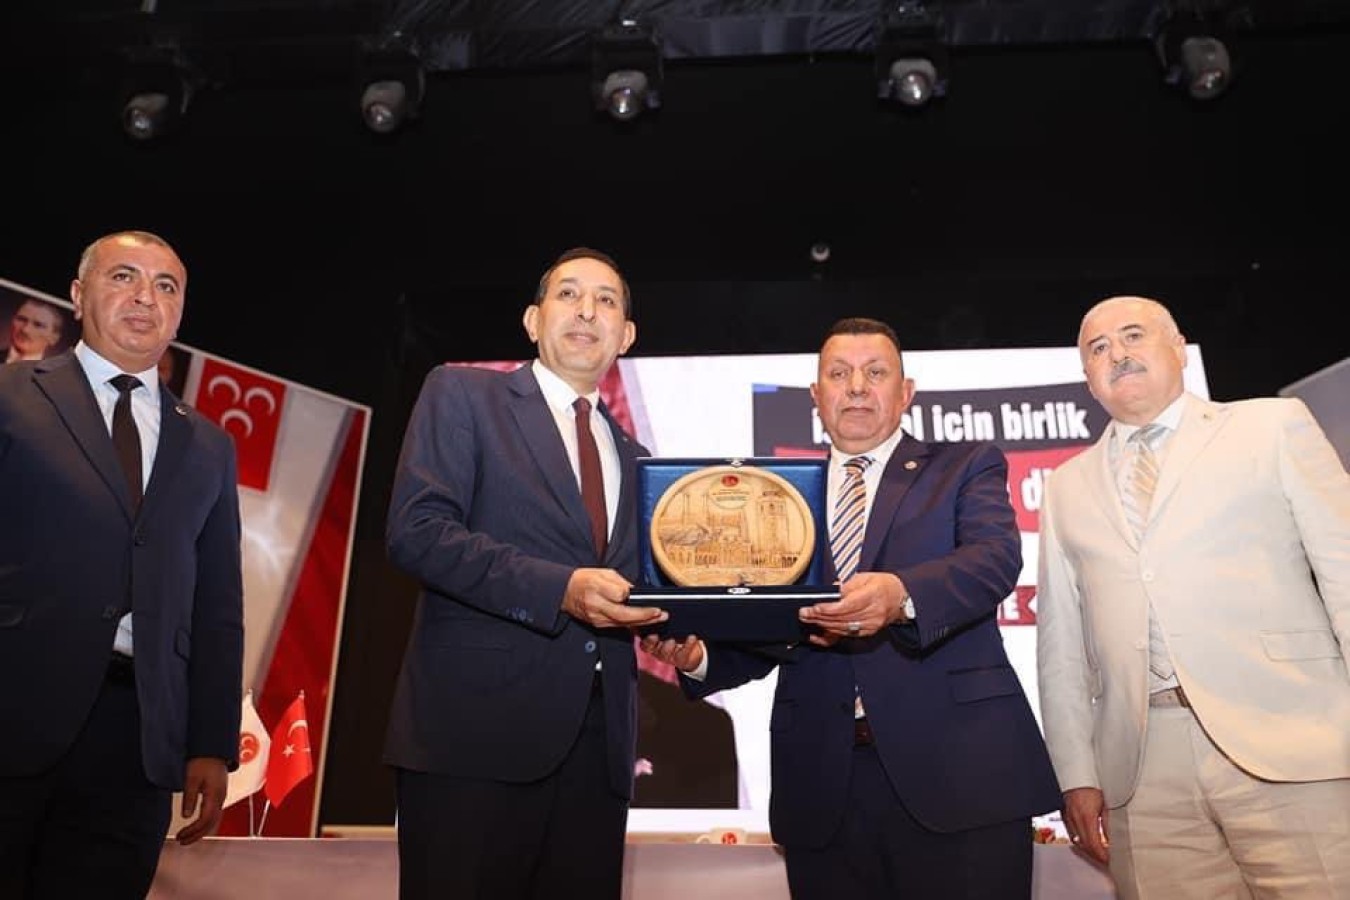 MHP Şanlıurfa İl Başkanı Mahmut Güneş, güven tazeledi;